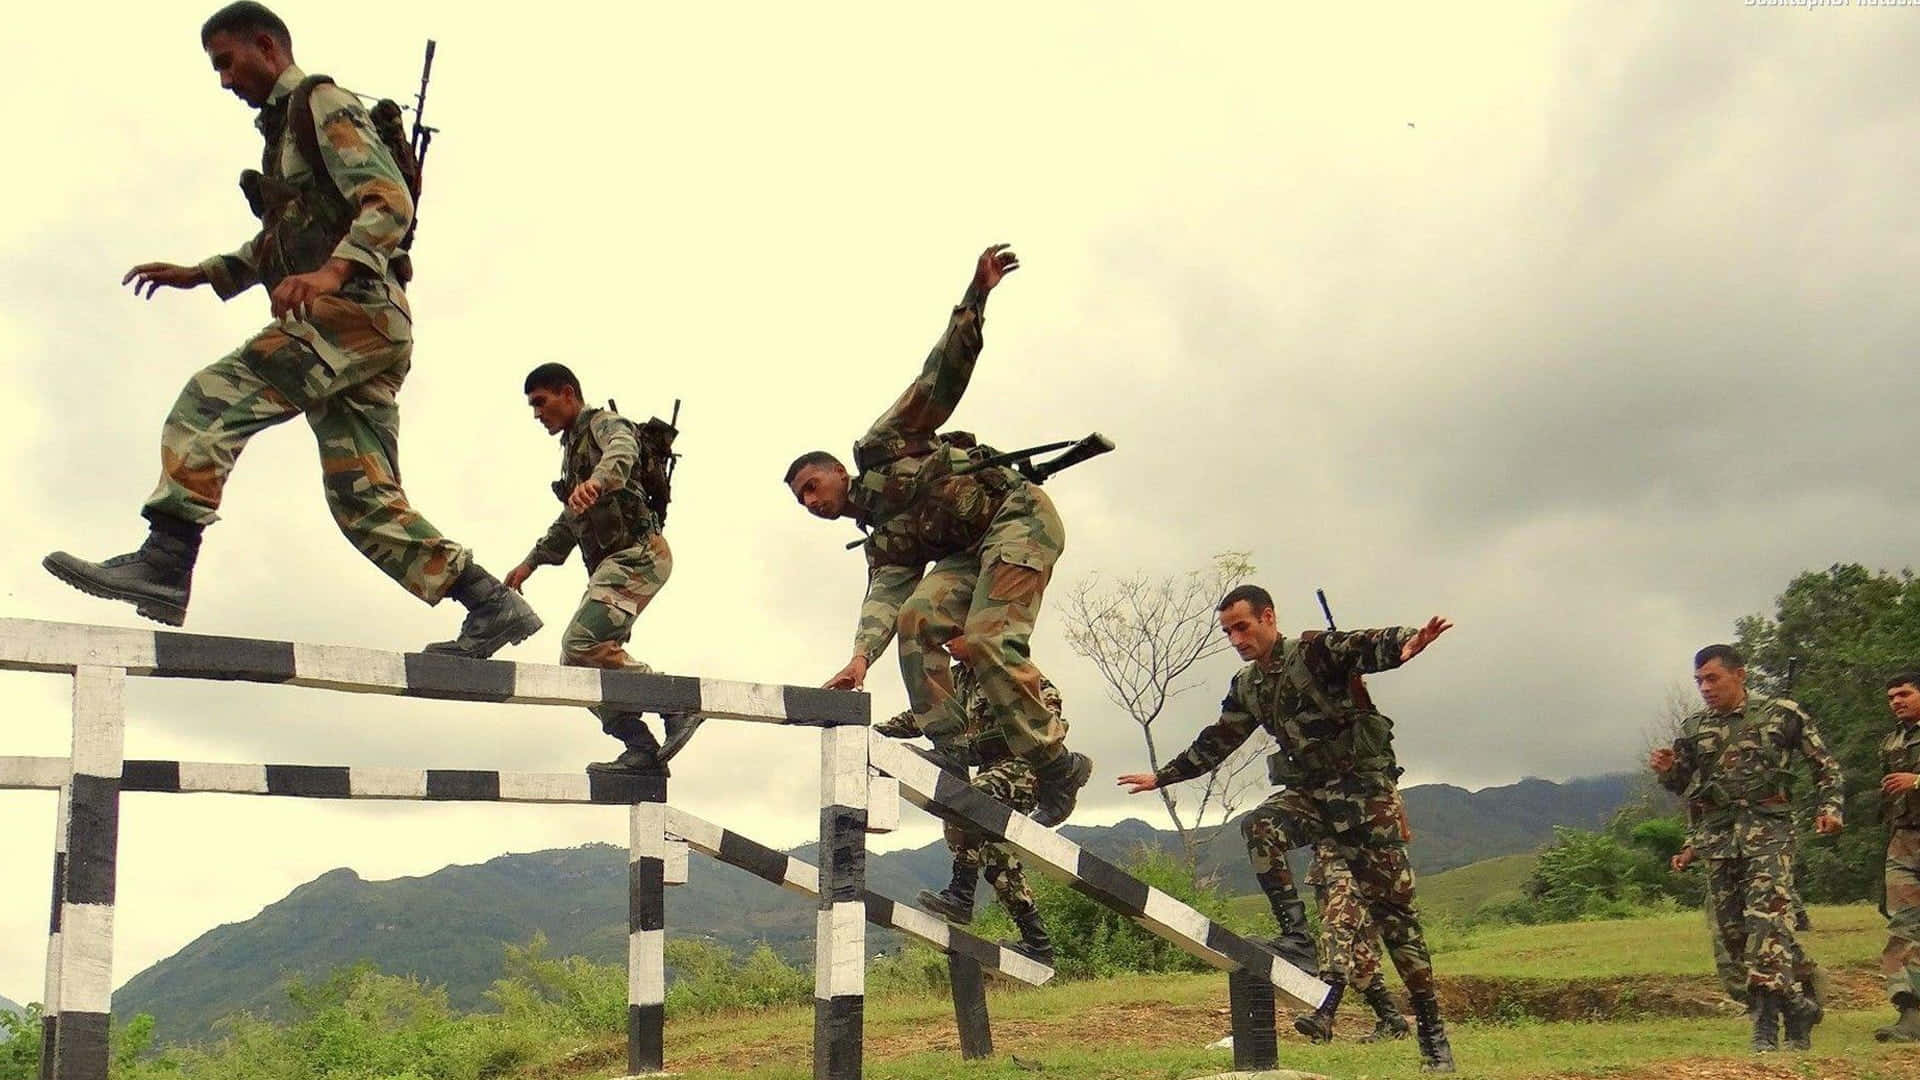 Orgogliosidifensori Dell'india - Esercito Indiano